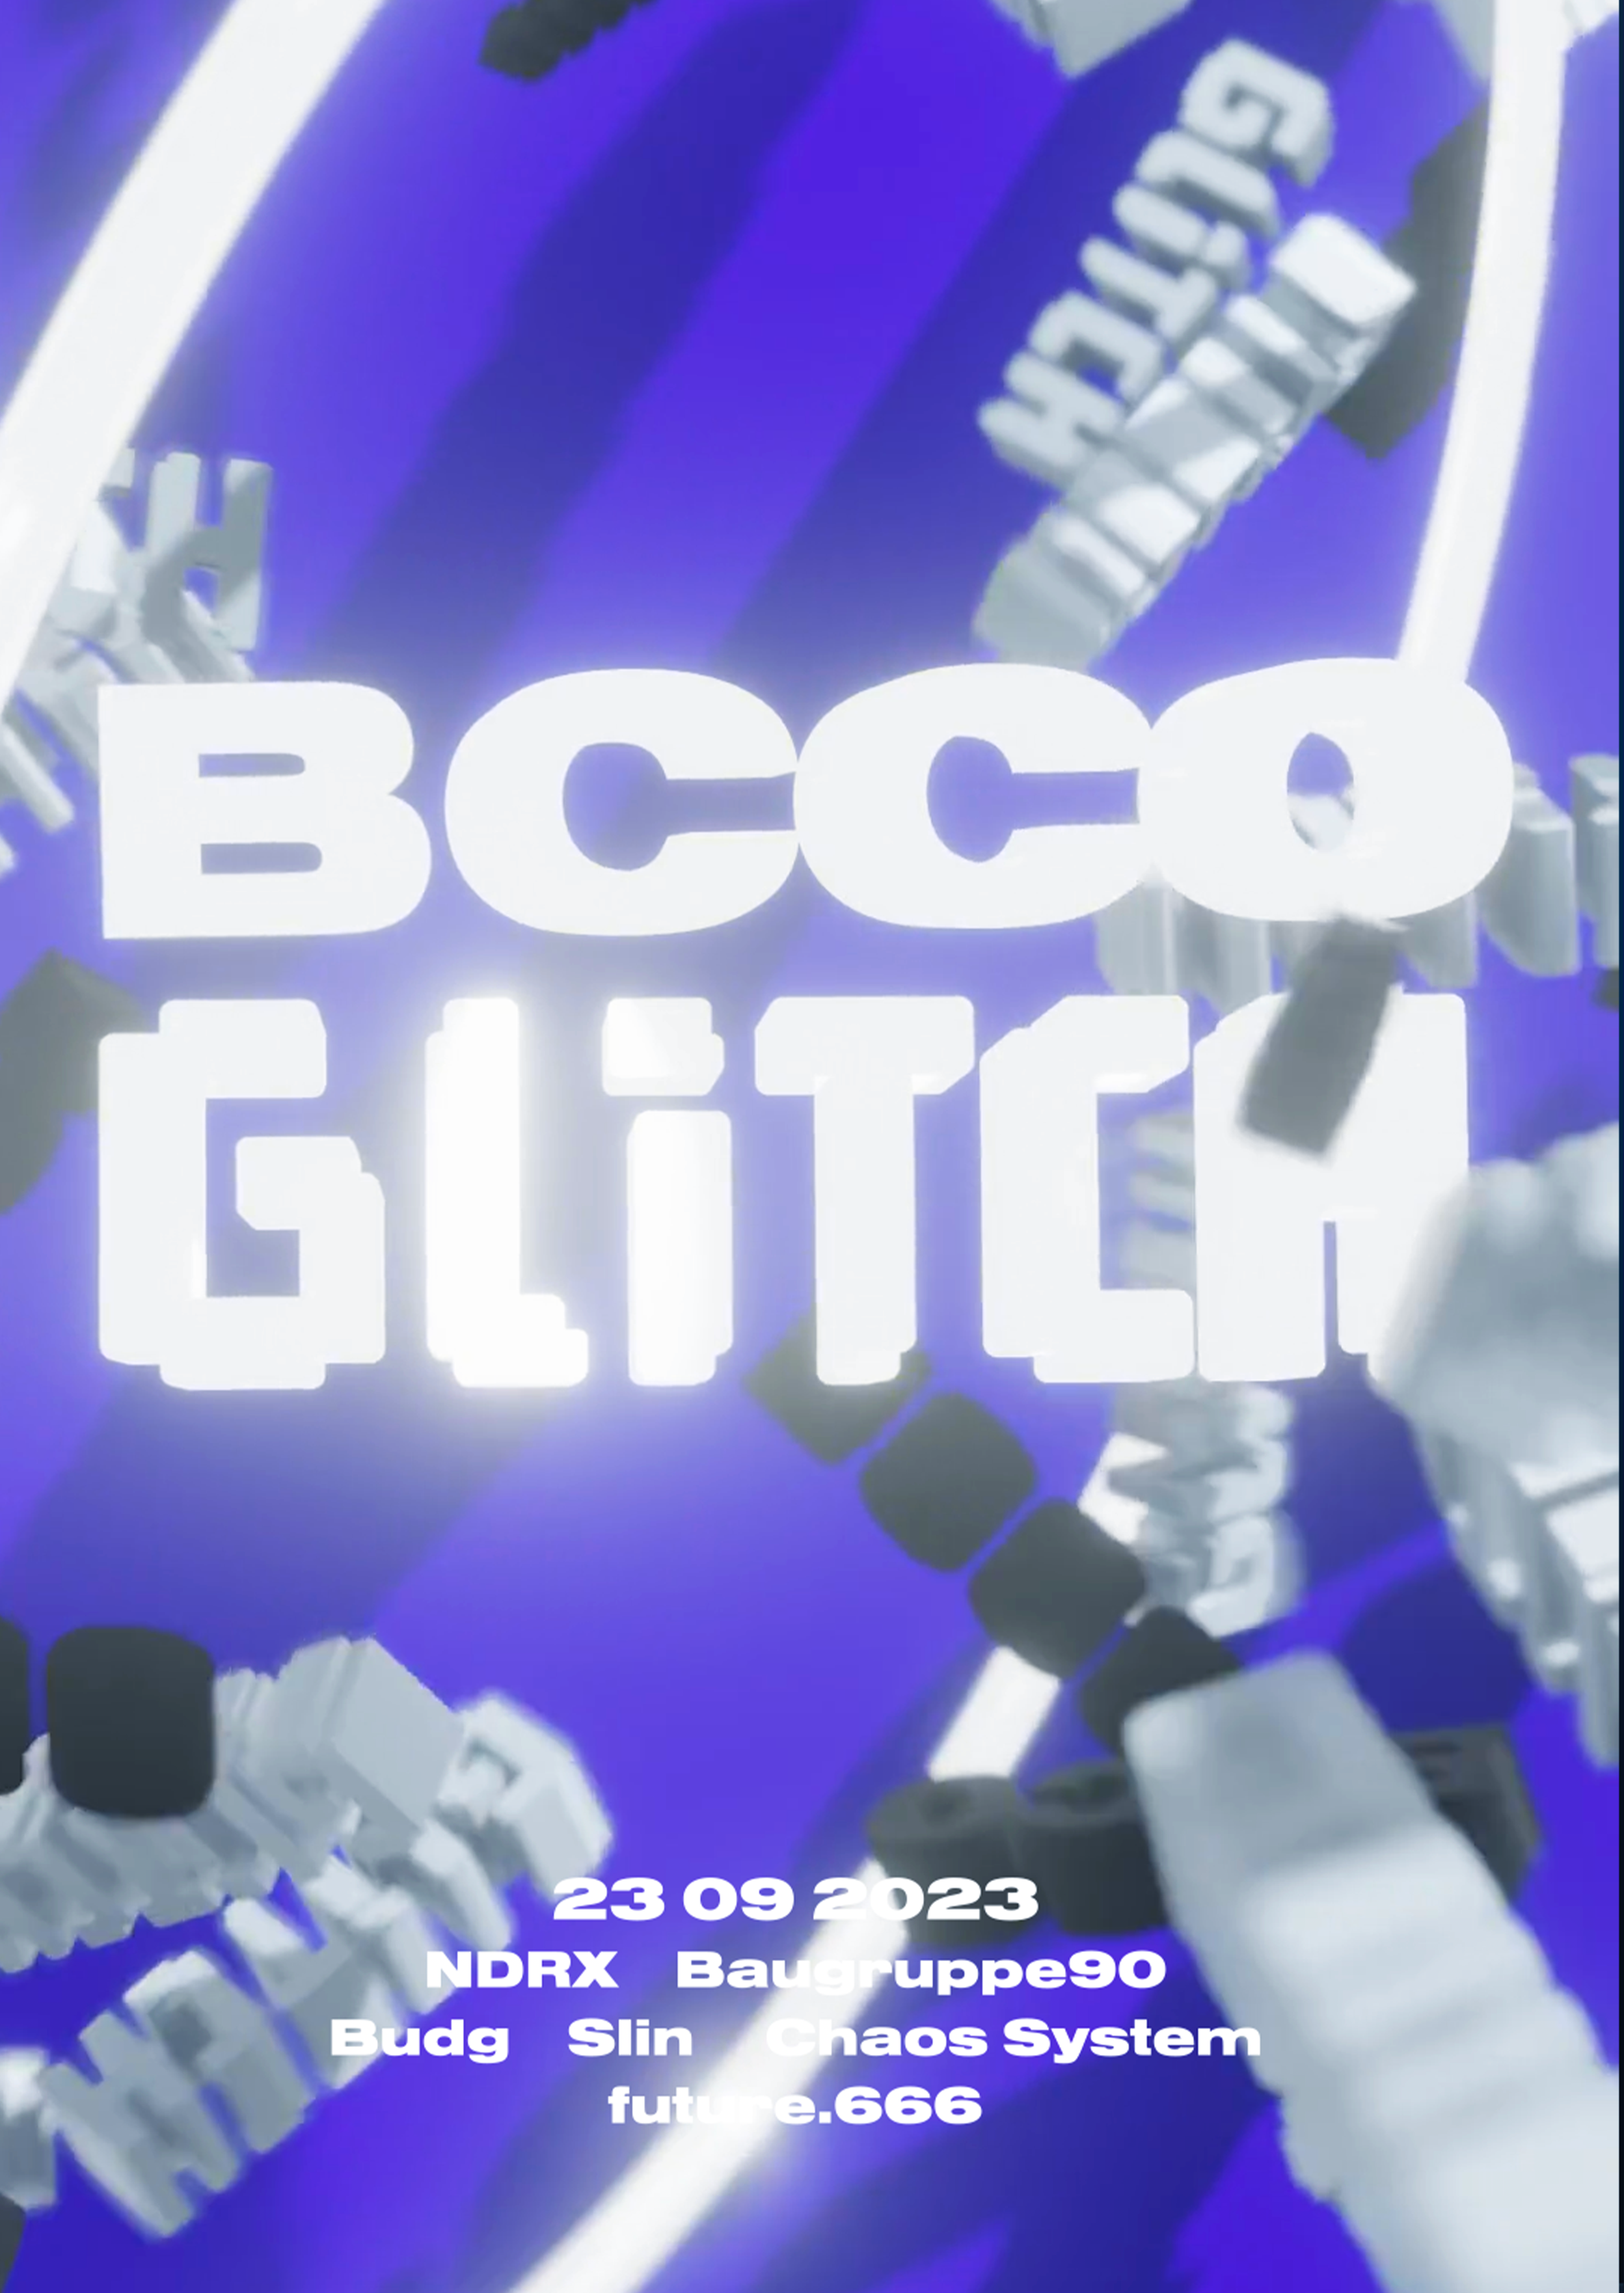 BCCO x GLITCH - Página frontal